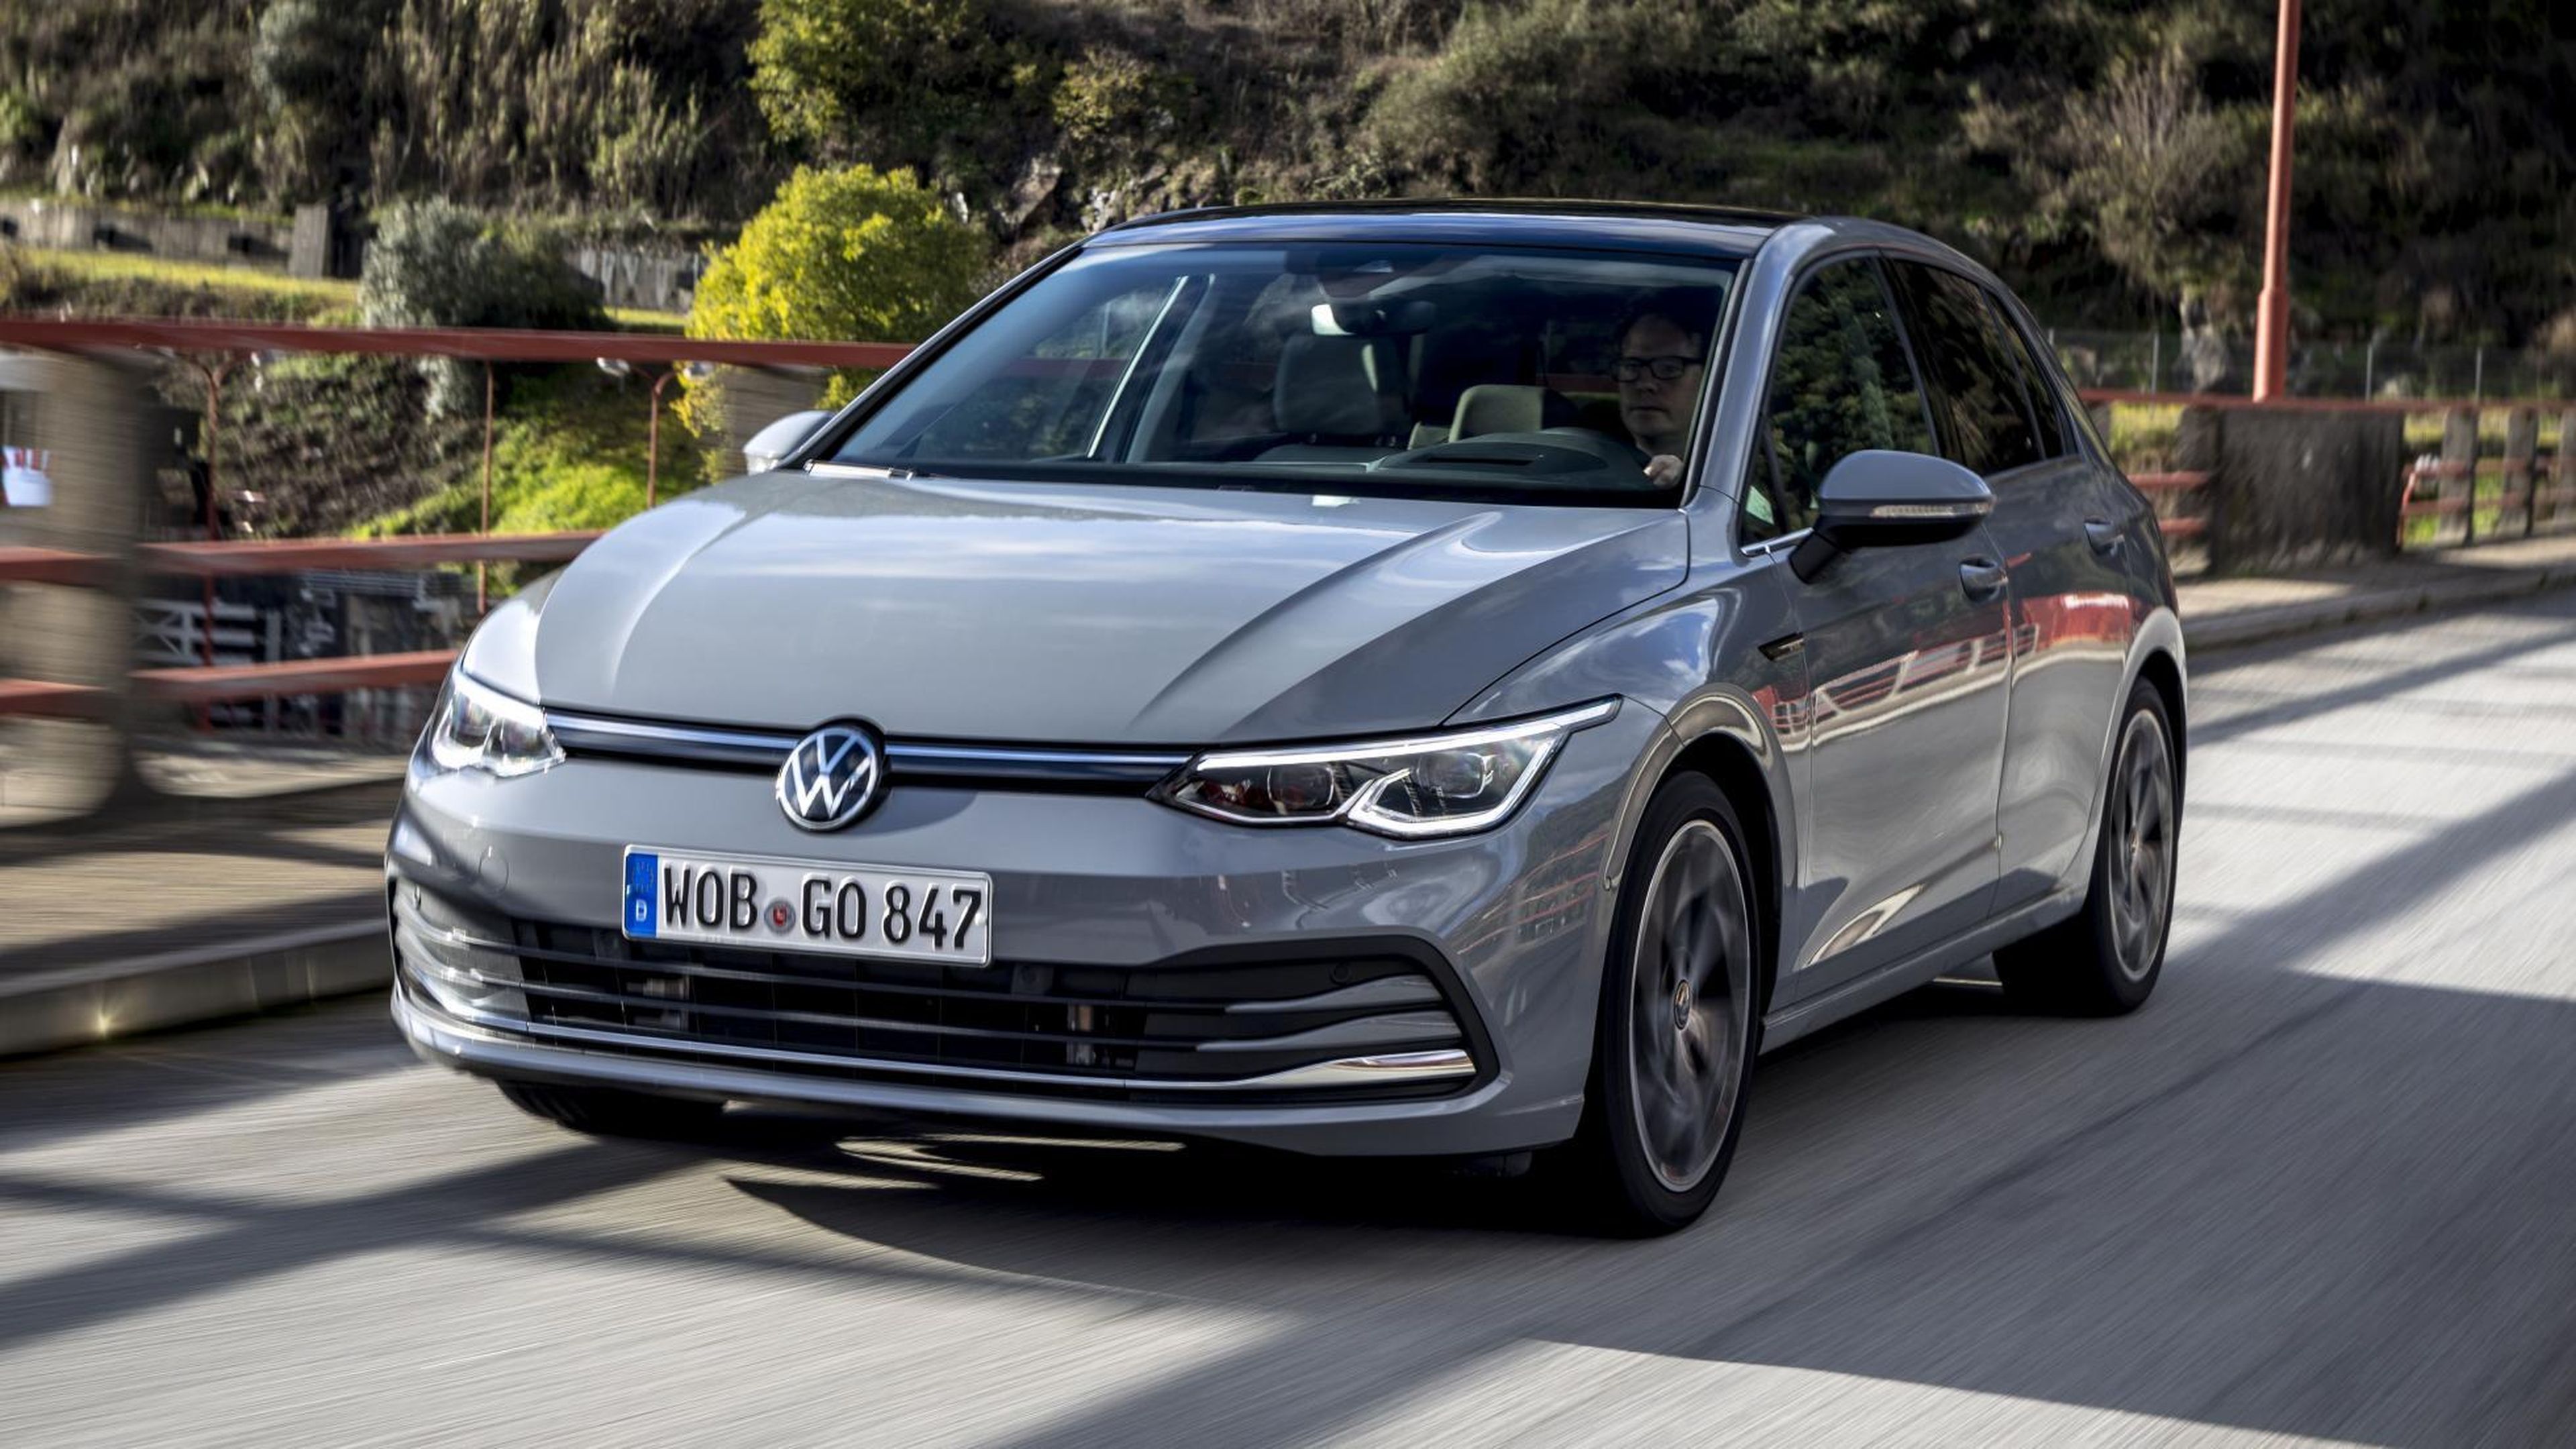 Volkswagen fabrica coches de nuevo